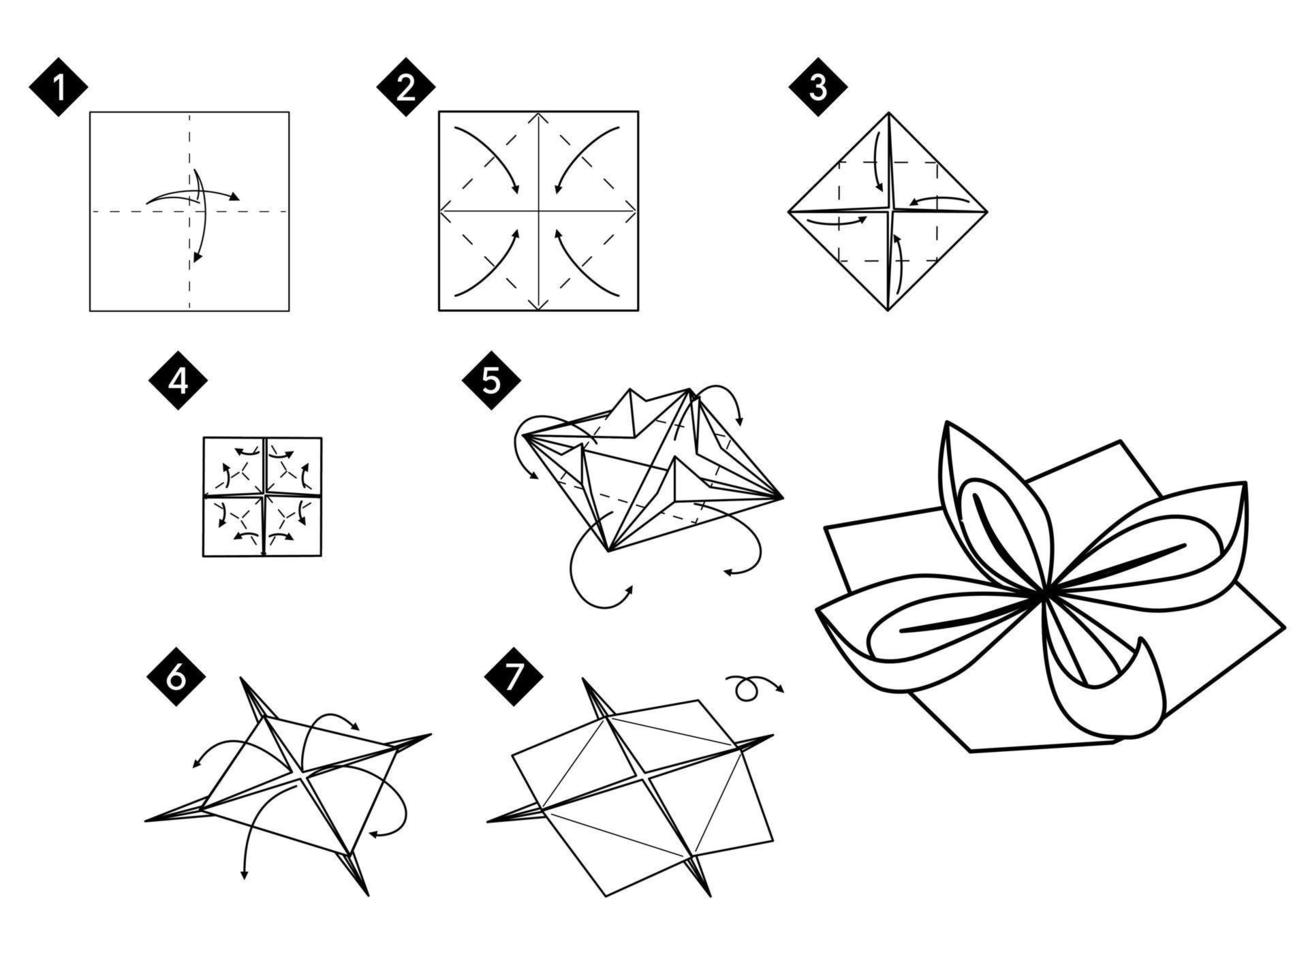 Contabilidad oído Ánimo como hacer flor de loto en origami. paso a paso 8771837 Vector en Vecteezy